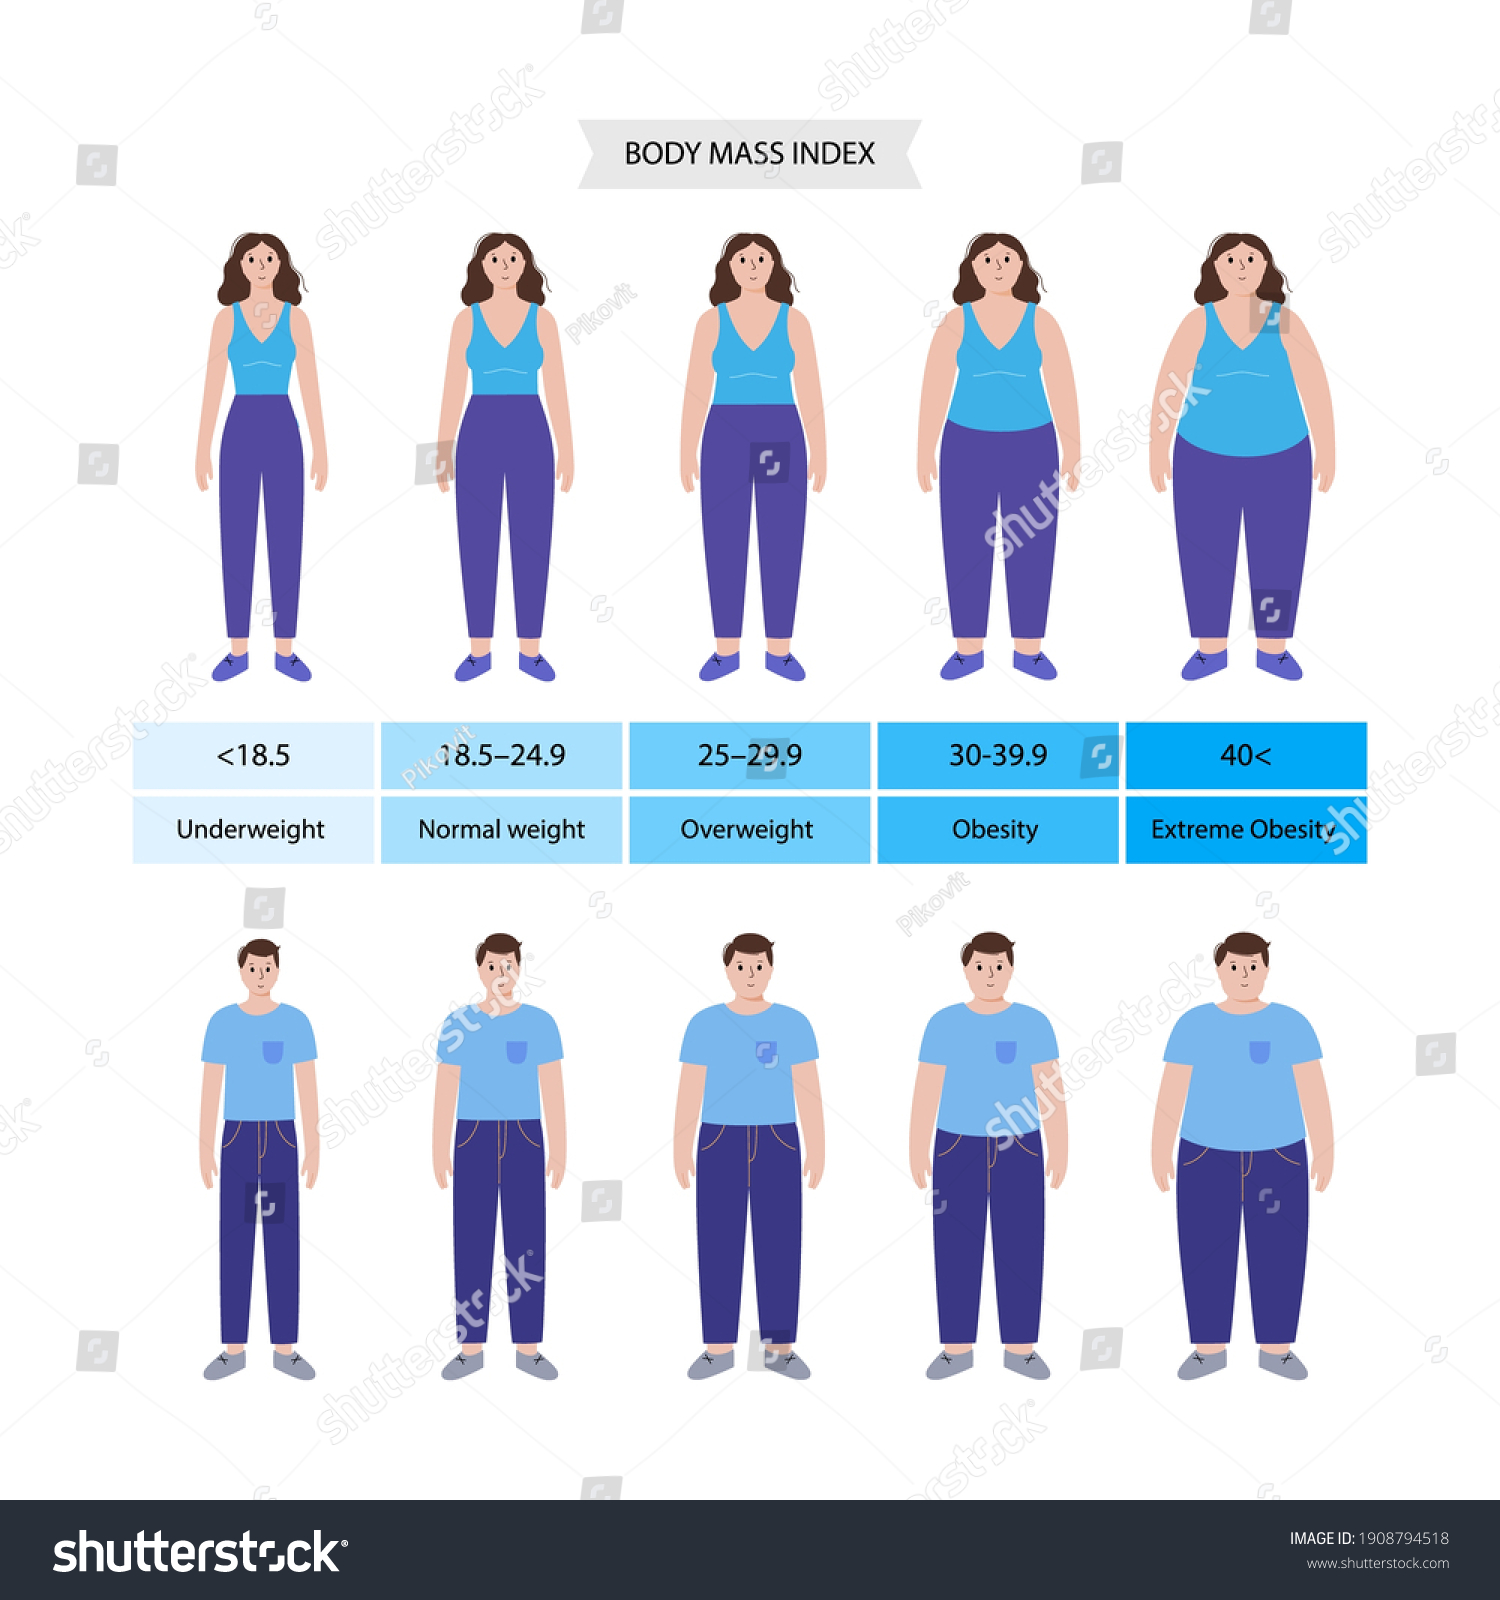 Was ist ein gesunder Body-Mass-Index für eine Frau?